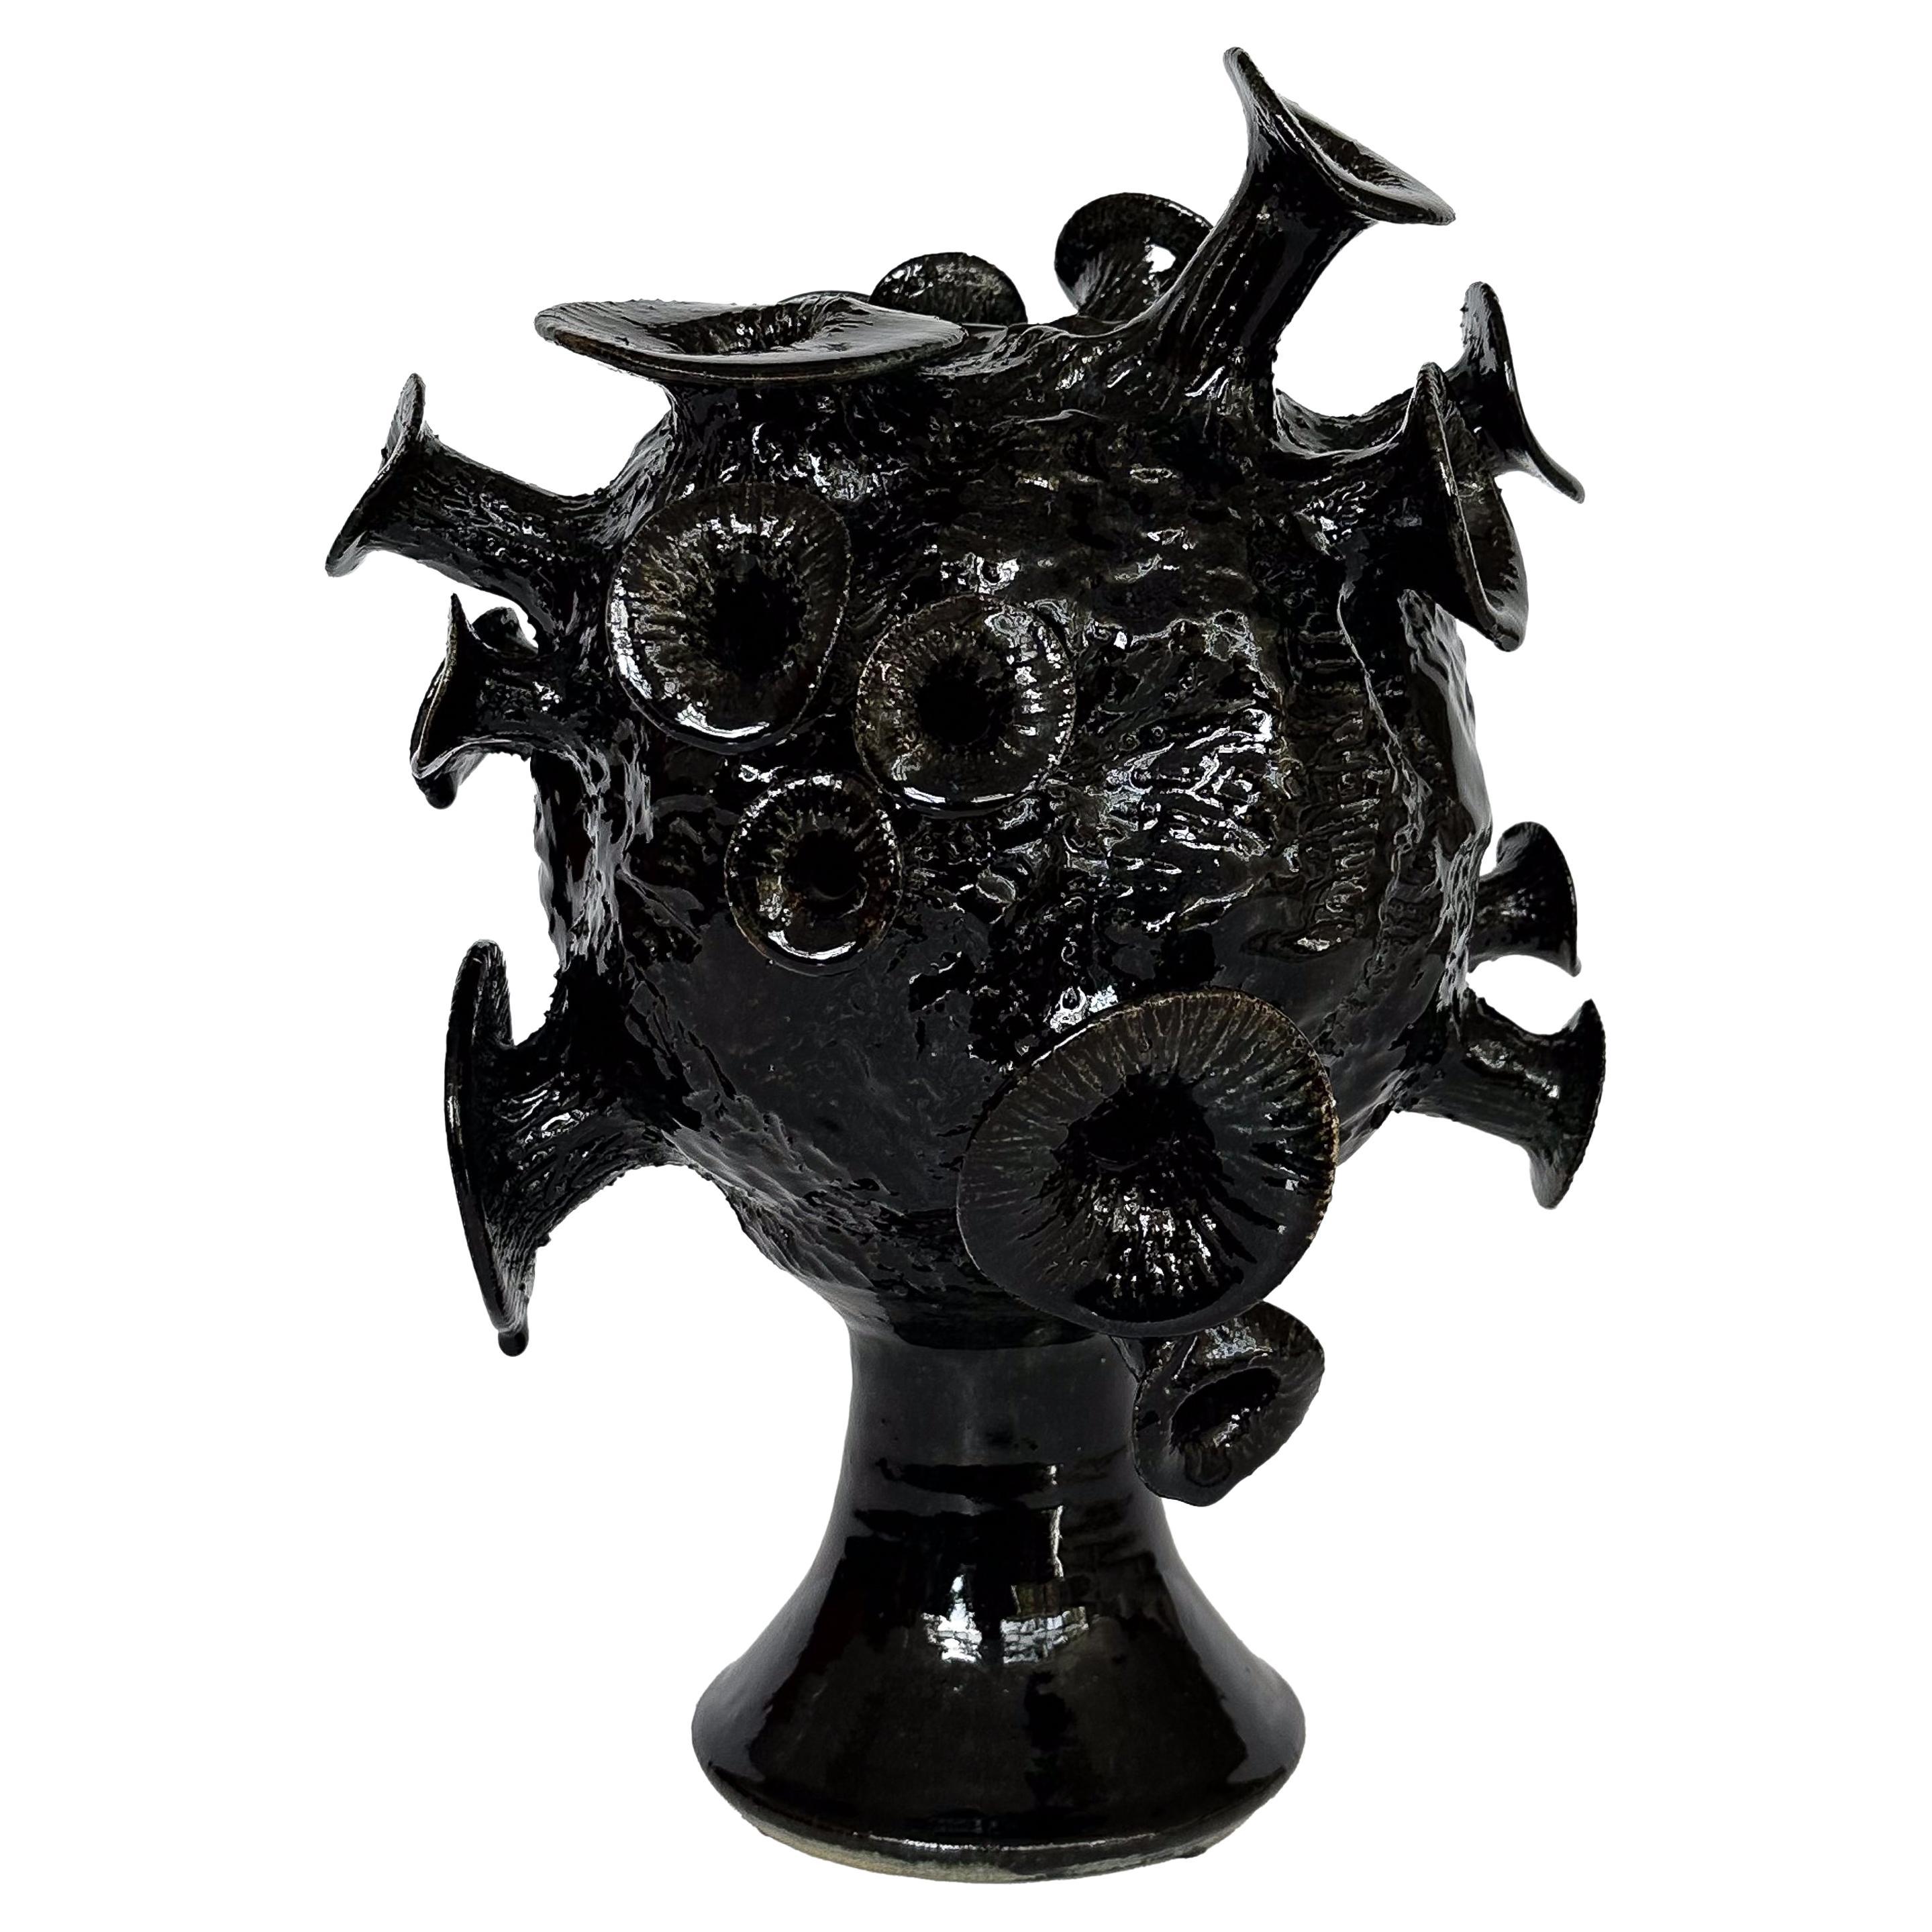 Unique Organic Form Black Glazed Pottery Sculpture For Sale